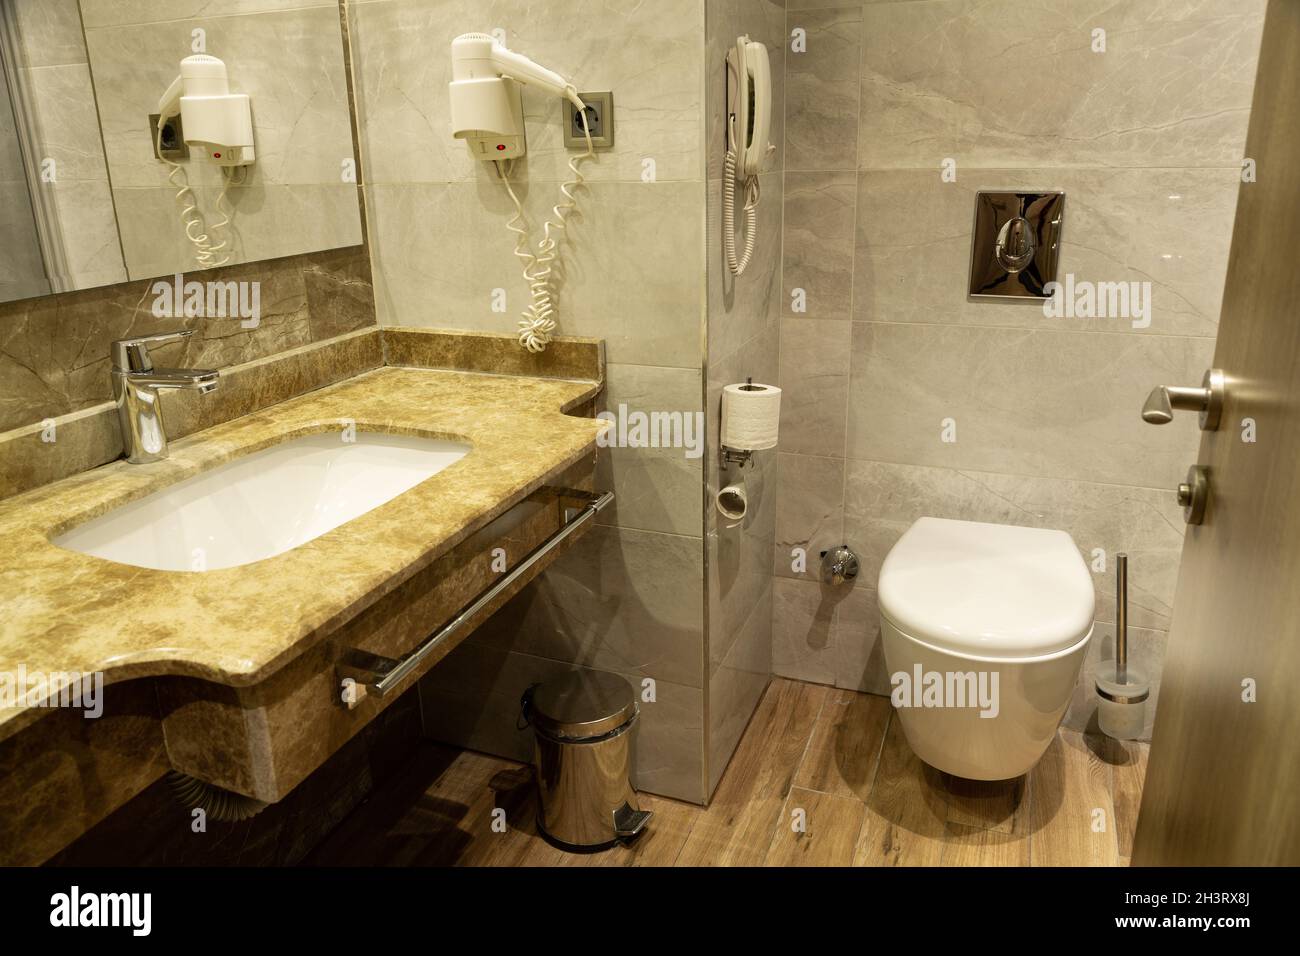 Baño moderno. Está amueblado con azulejos estampados de piedra natural. Foto de stock